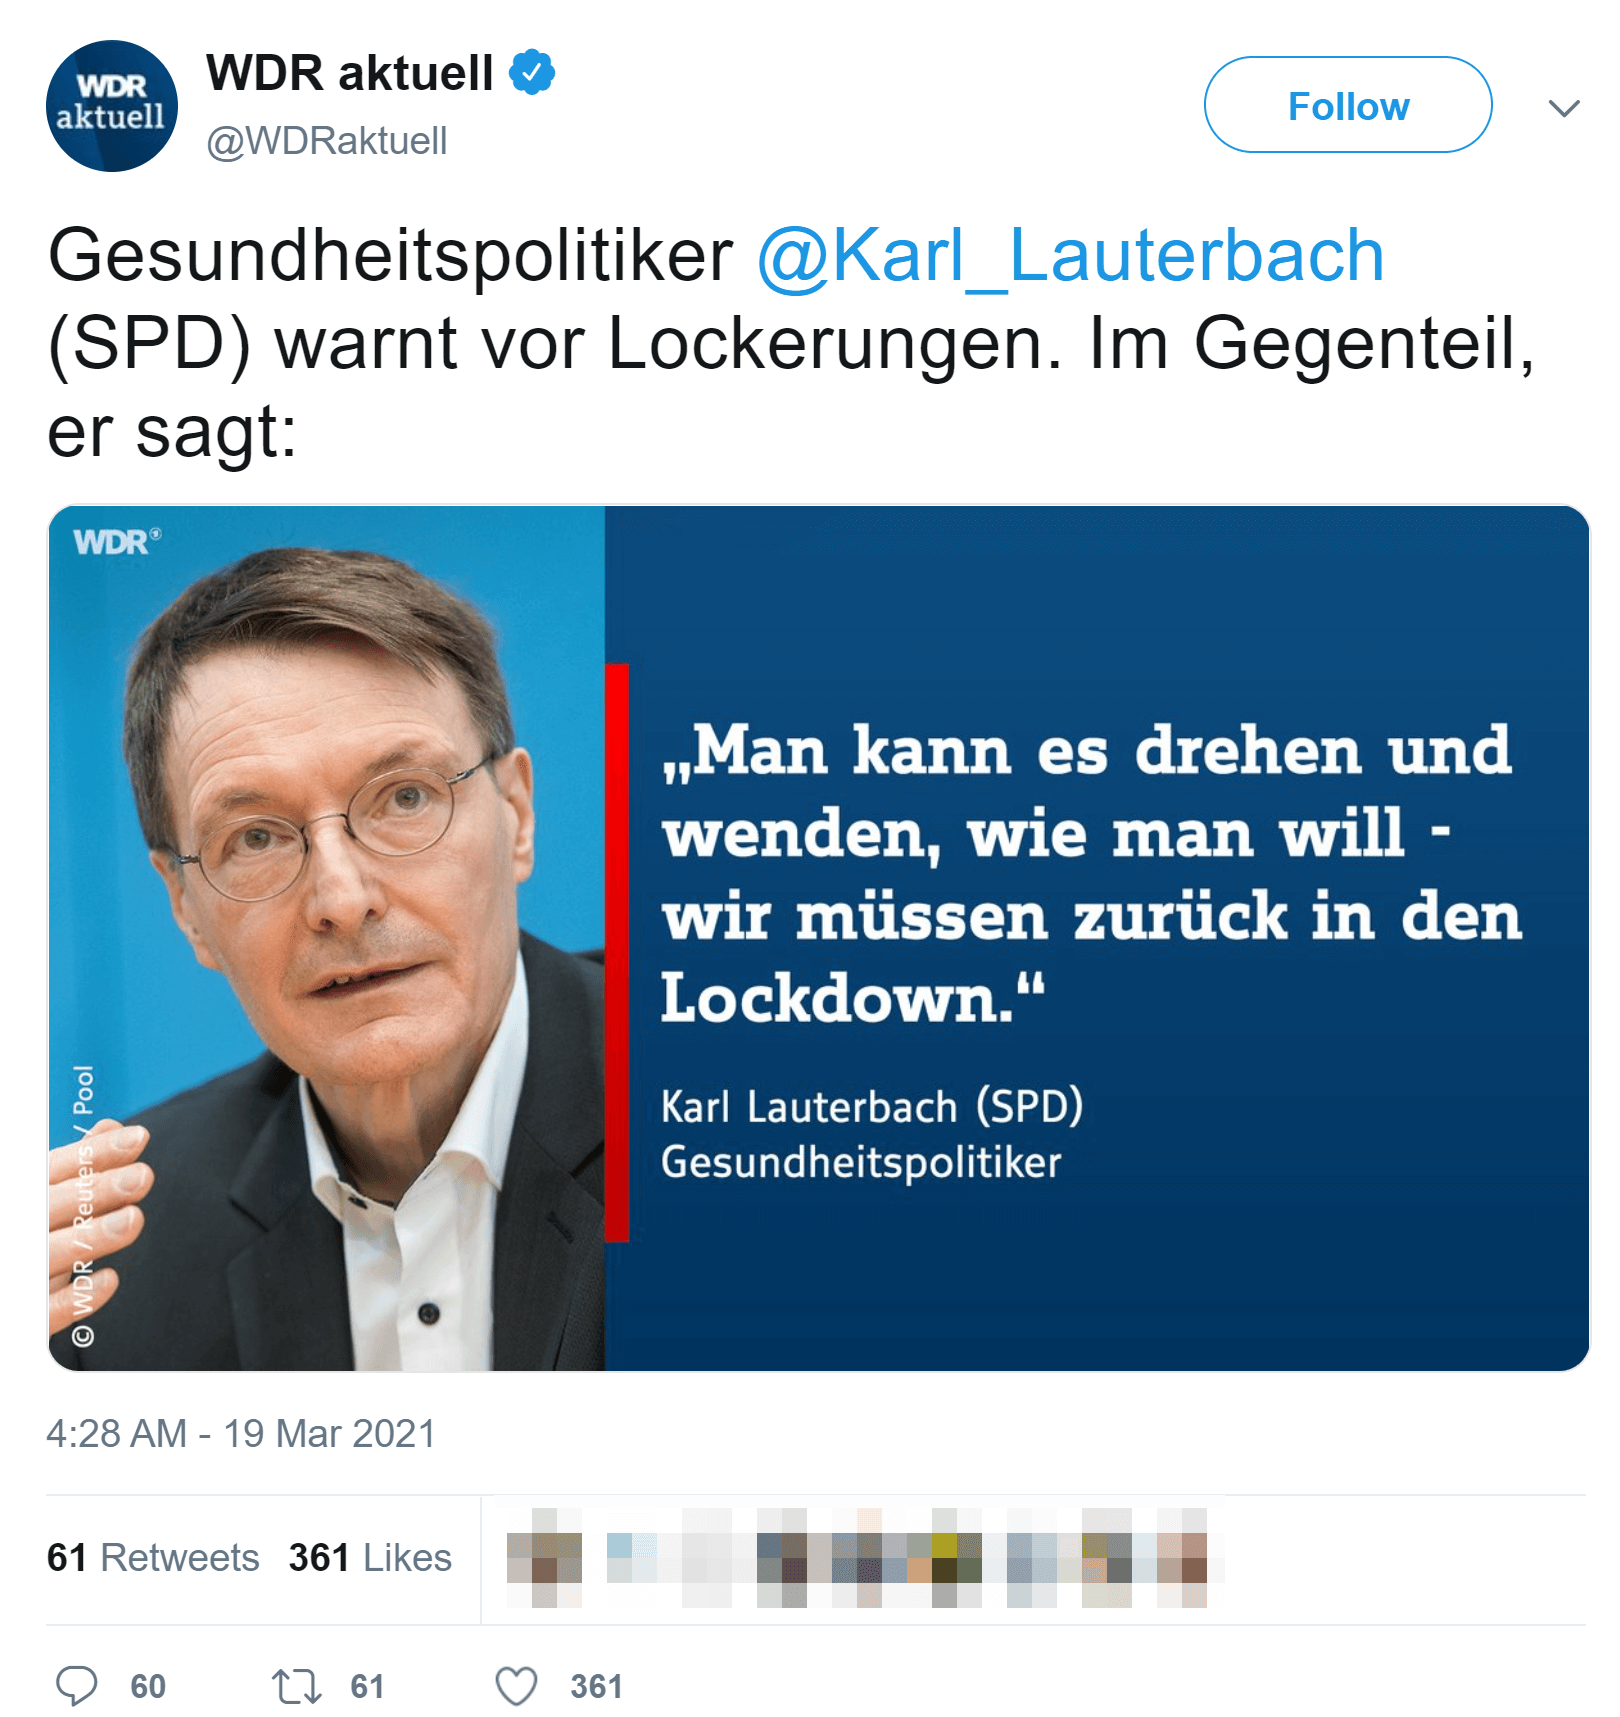 Ein Twitter Beitrag des WDR wurde verändert und mit dem falschen Zitat versehen